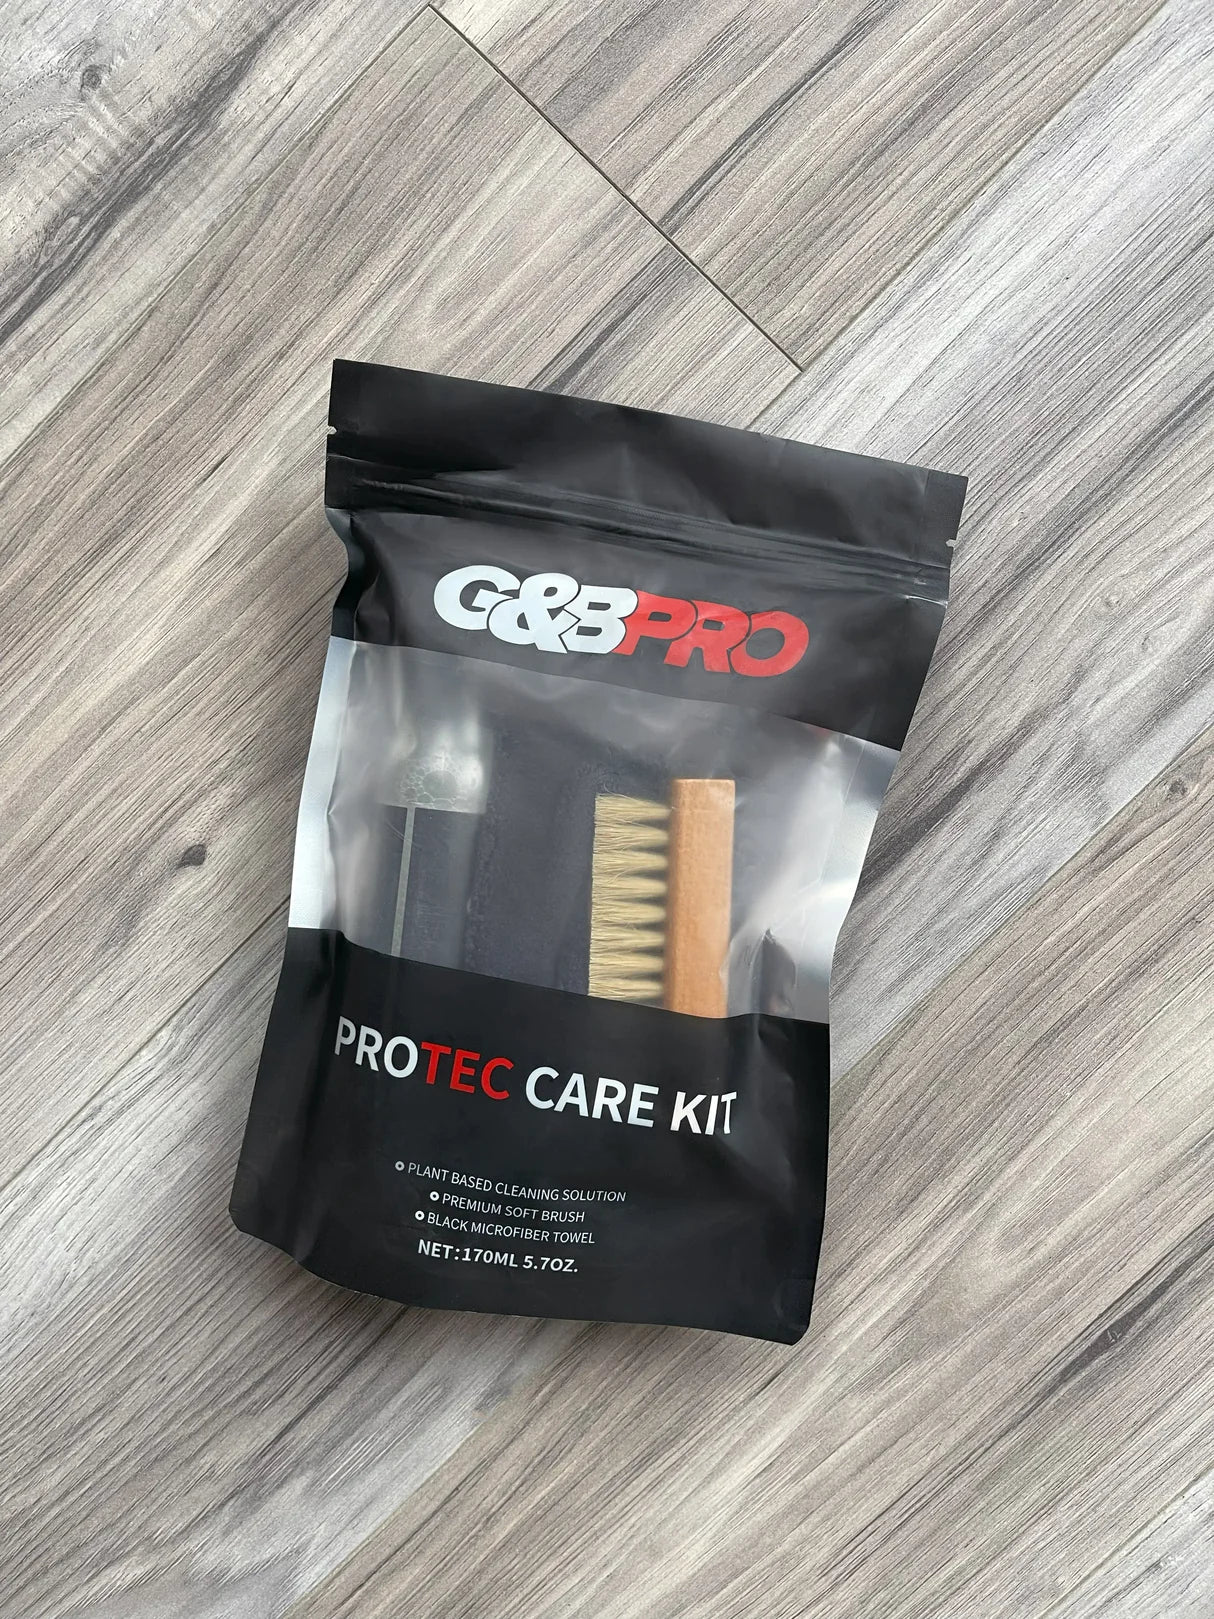 G&B Pro Protec Care Kit